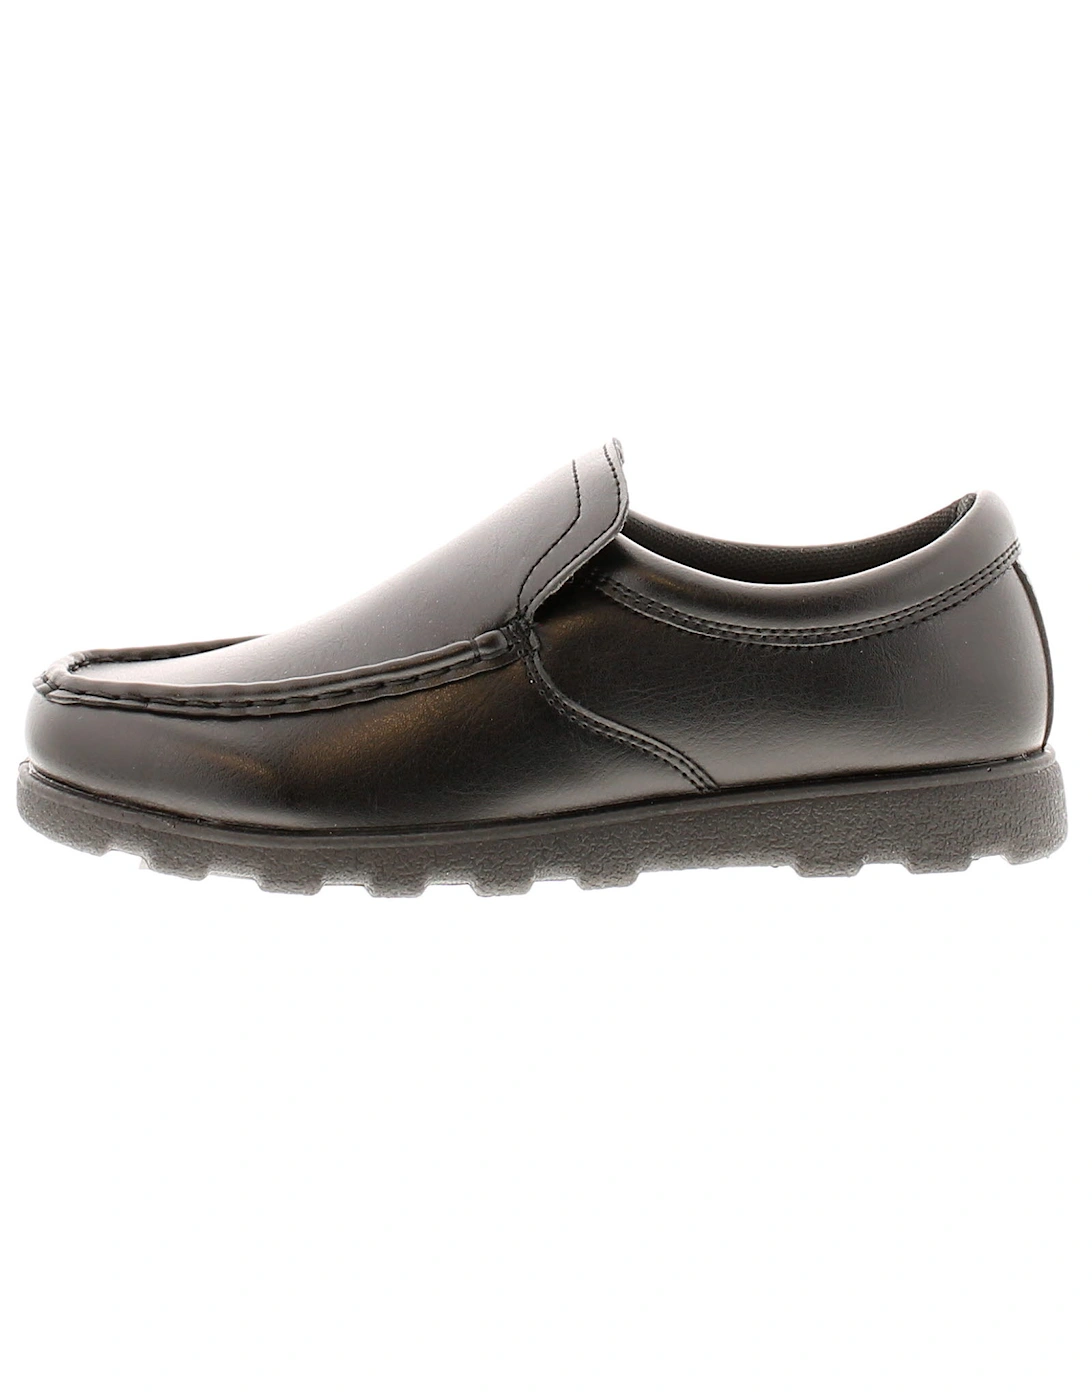 Older Boys Shoes School Valley Jnr Loafer Slip On Black UK Size